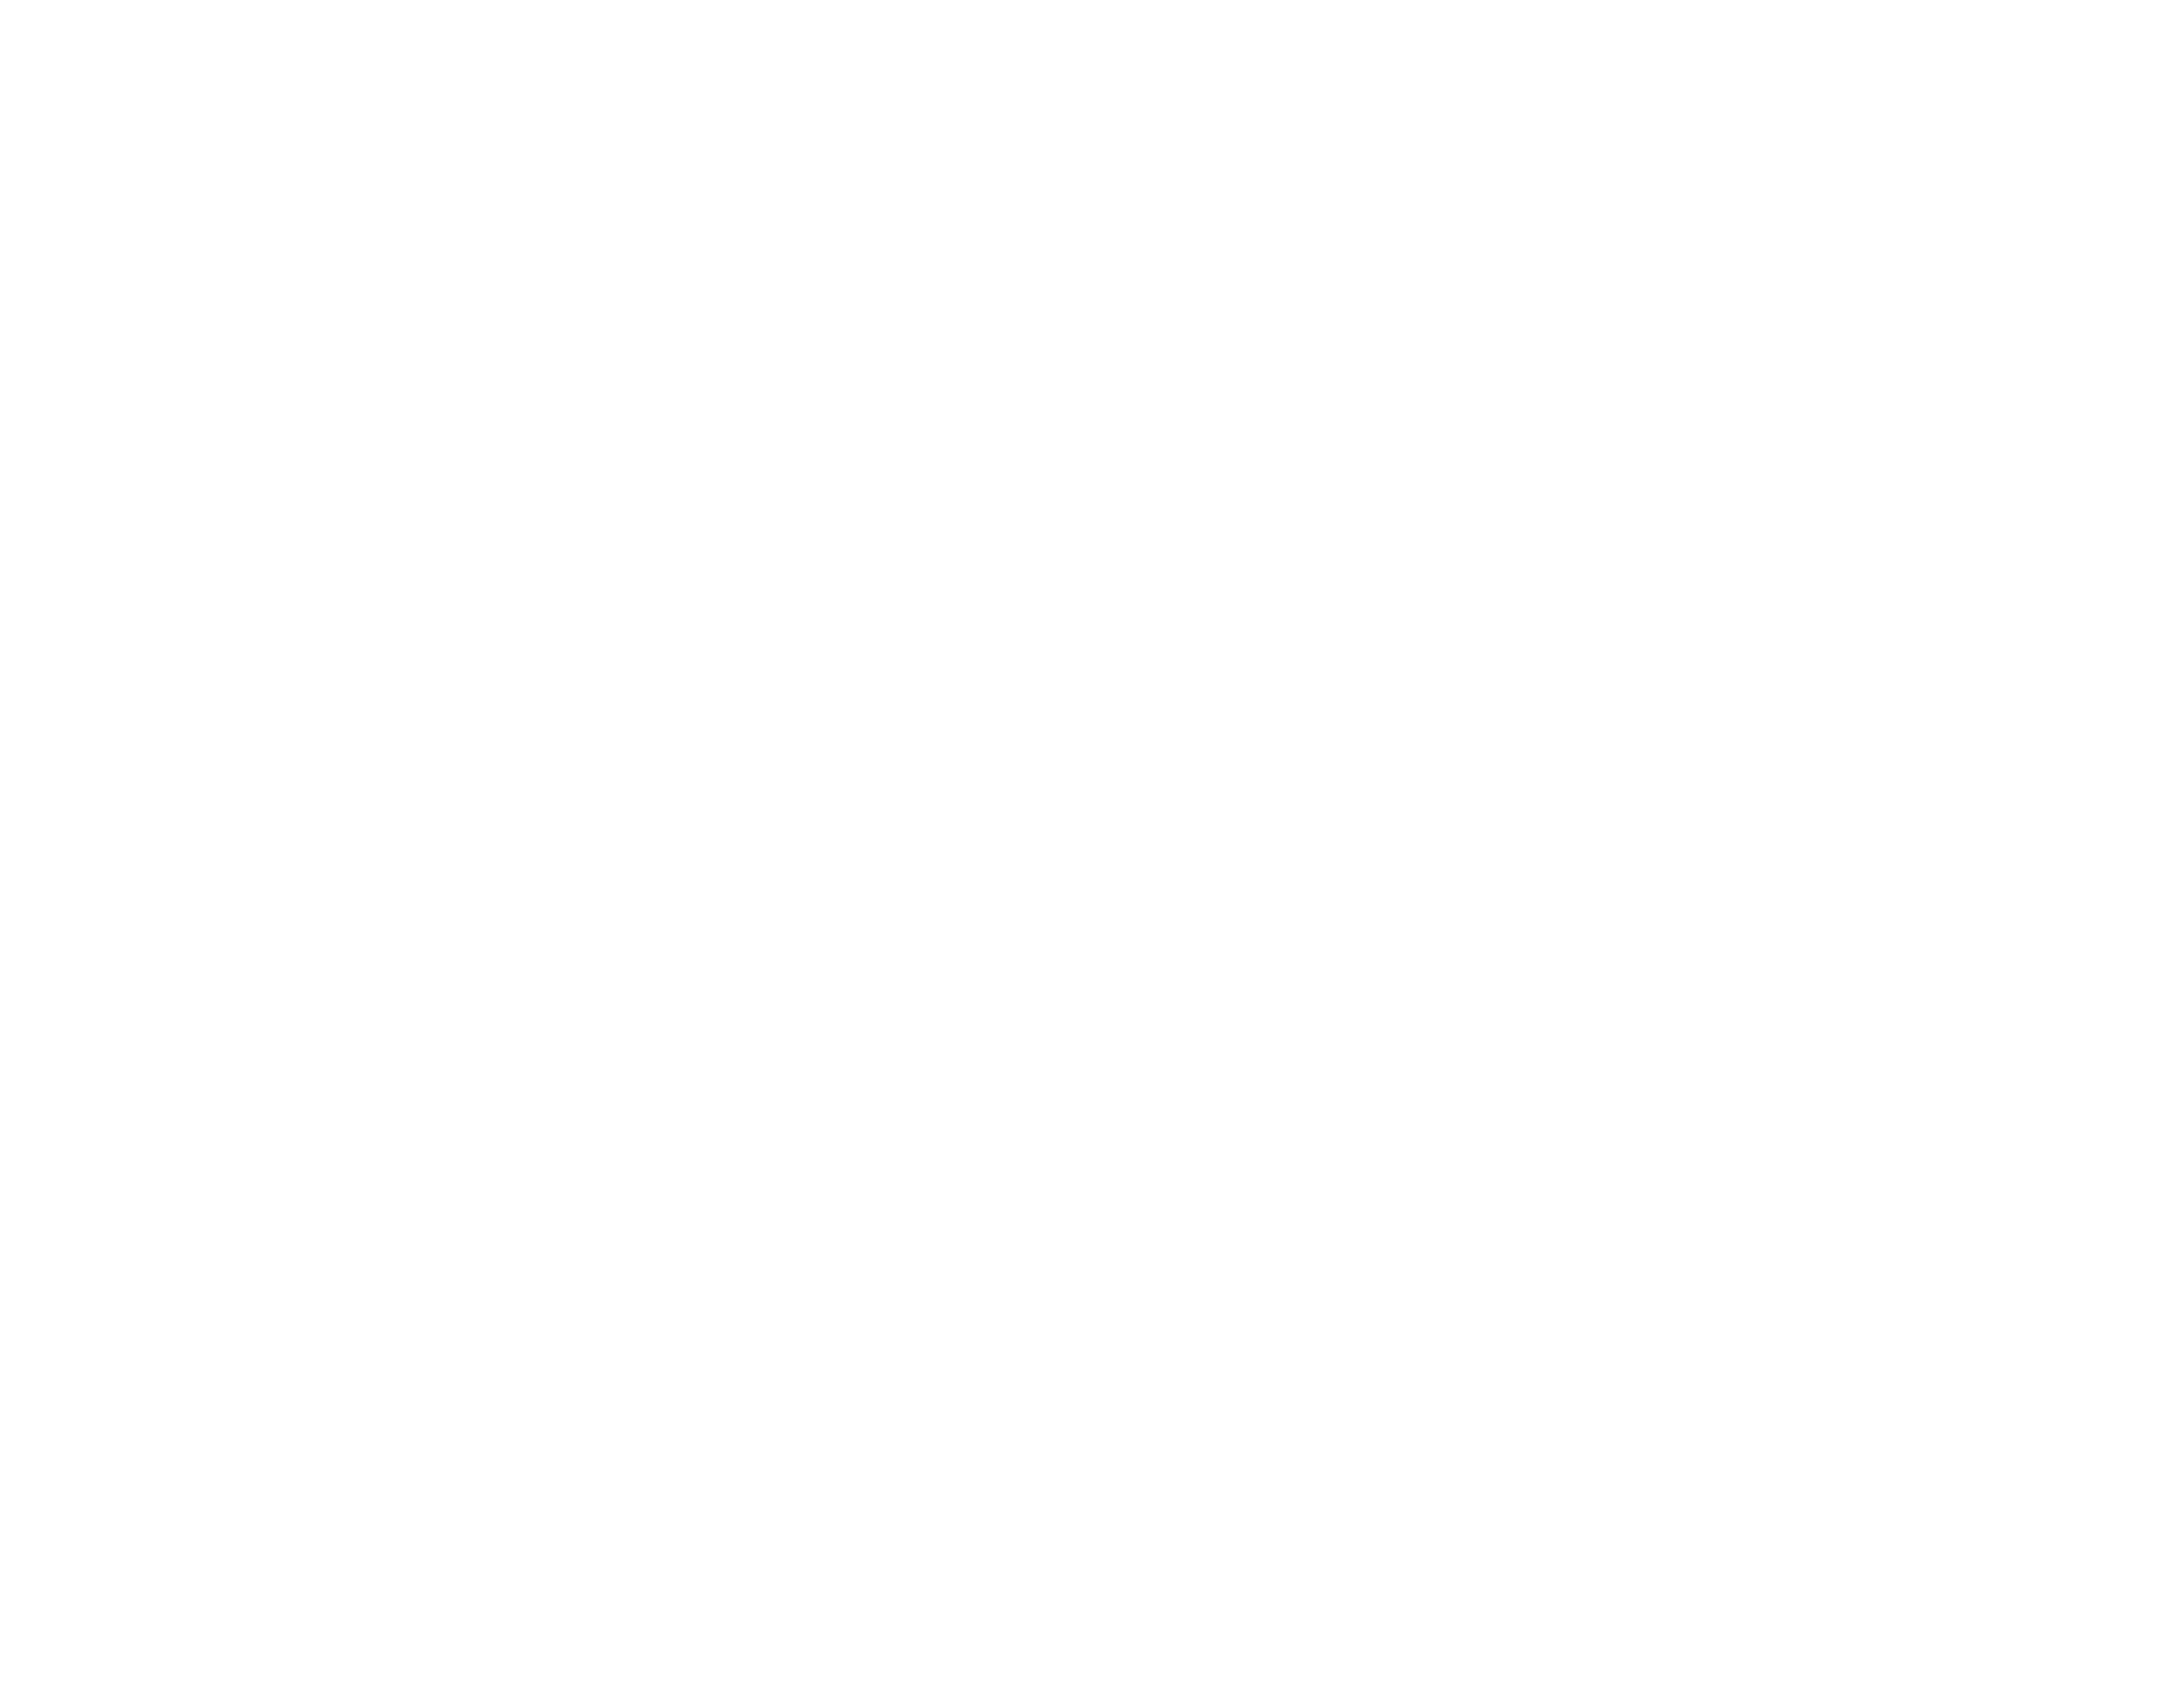 telkom-logo